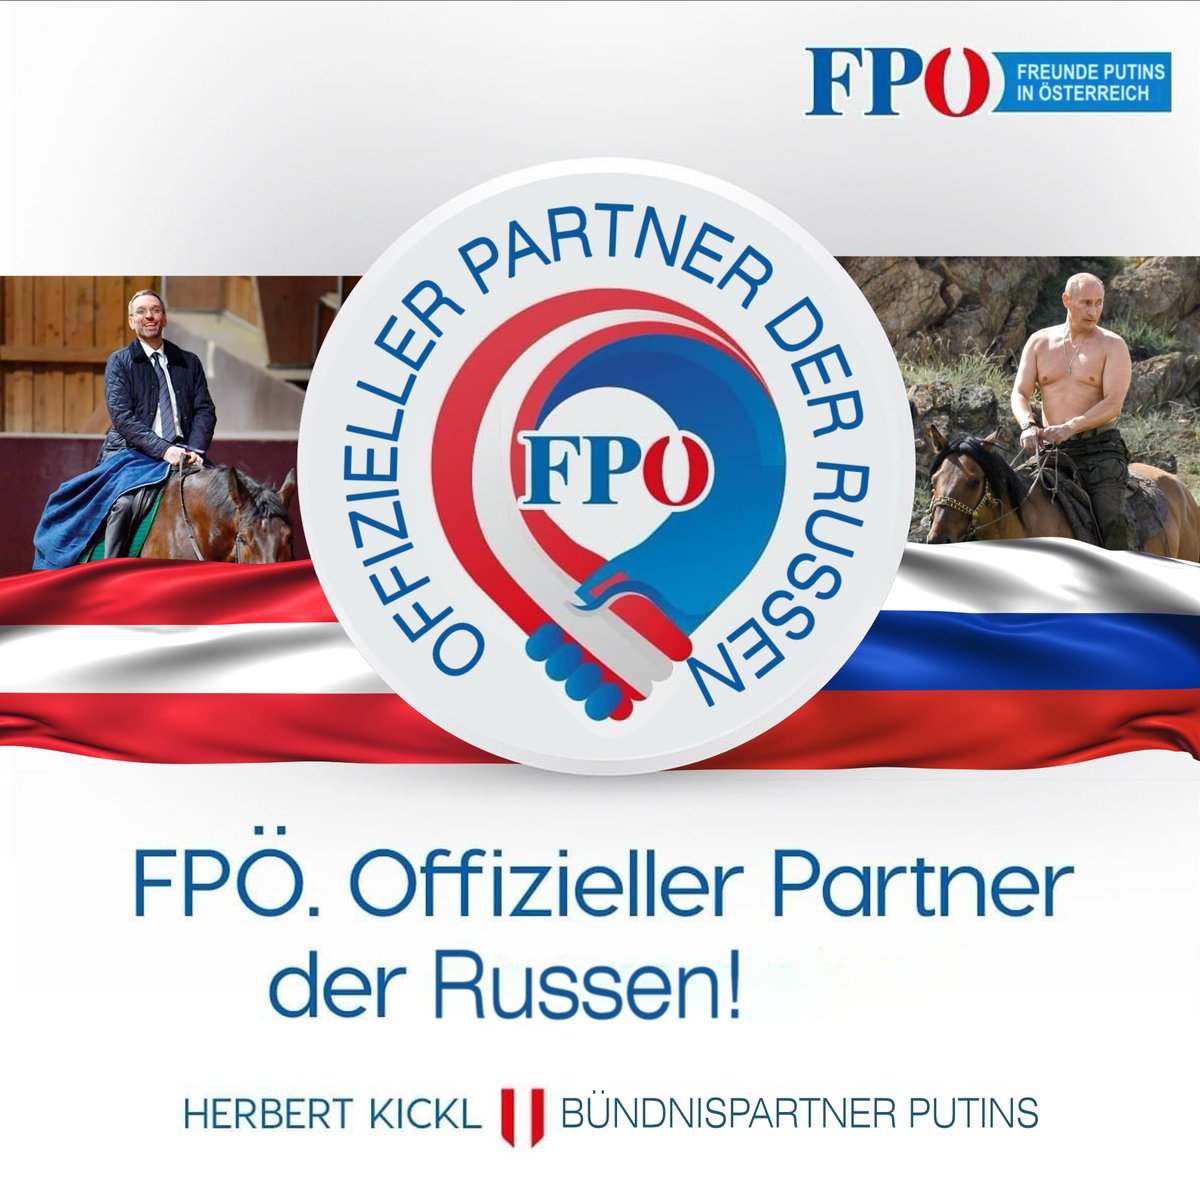 @FPOE_TV Die #FPÖ ist die Partei der Vaterlandsverräter #RubelNutten    Eine Stimme für die #FPÖ ist eine Stimme für Putin 🔥 
#Росіянашворог 
#RusslandIstUnserFeind 
#RussiaIsOurEnemy
⬇️
x.com/dietmarp73/sta…